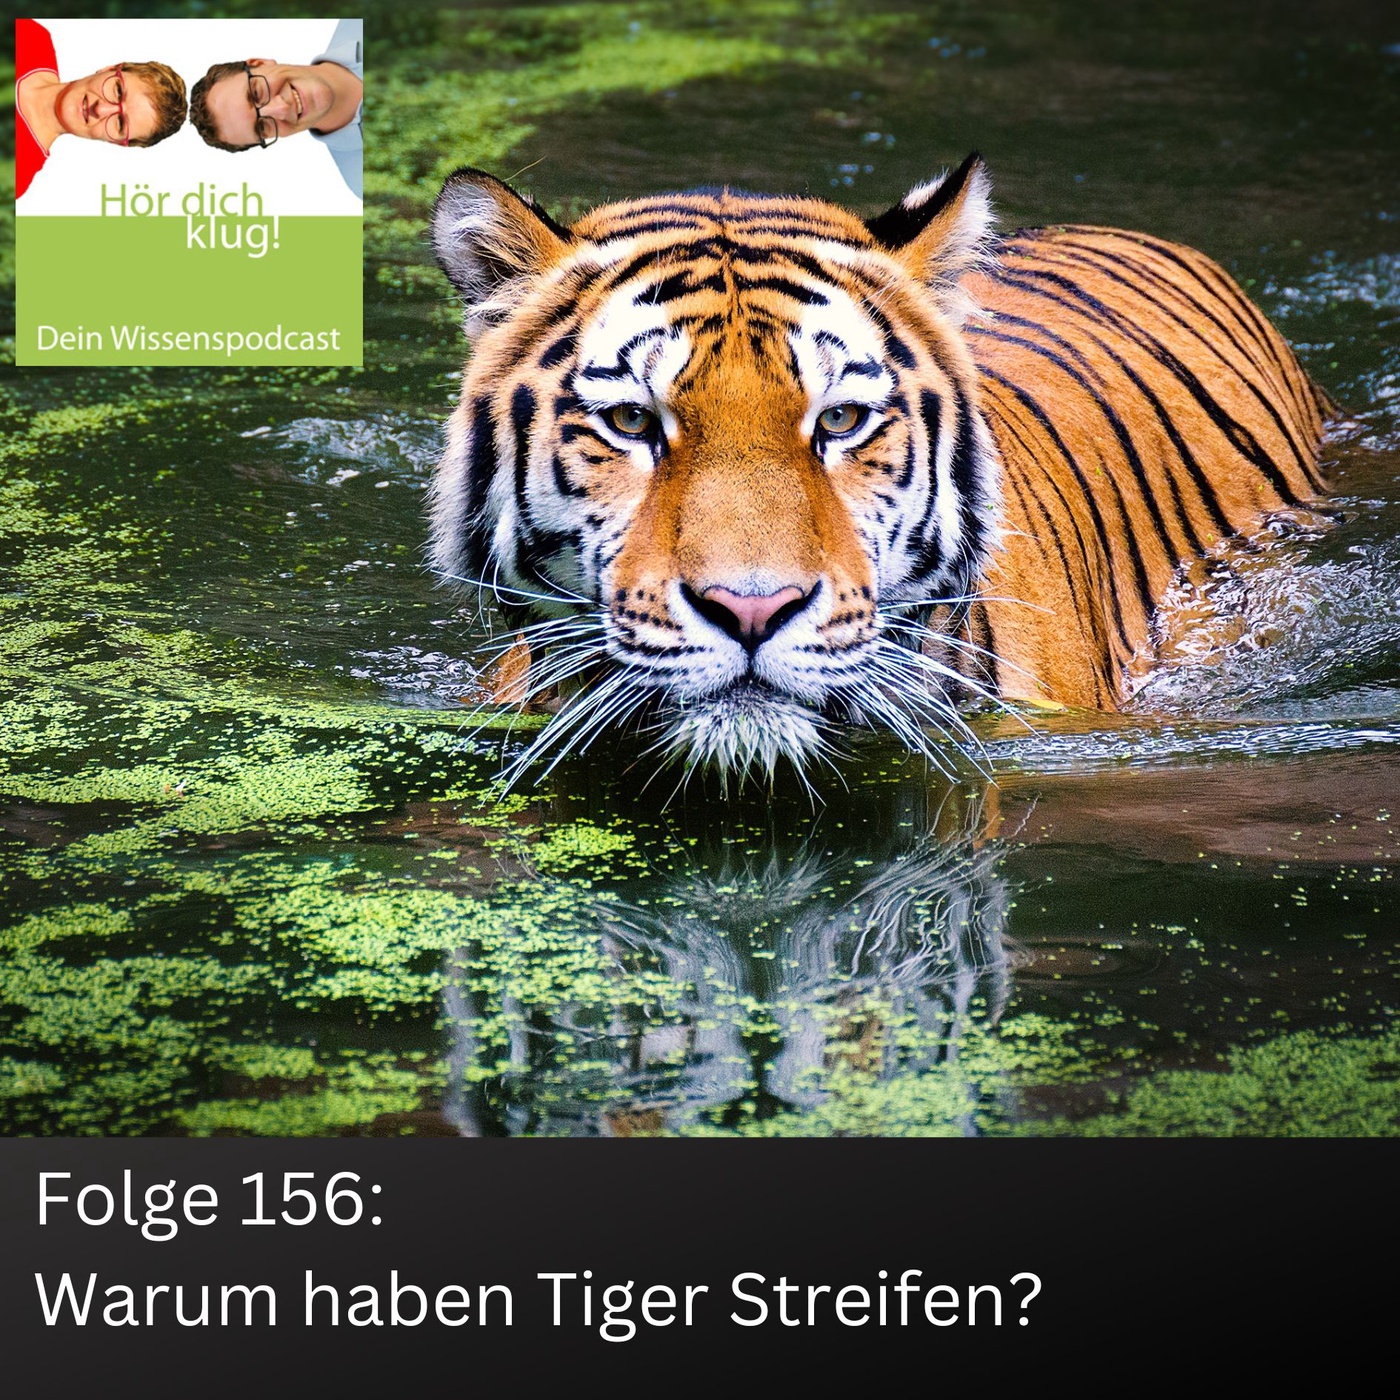 Warum haben Tiger Streifen?